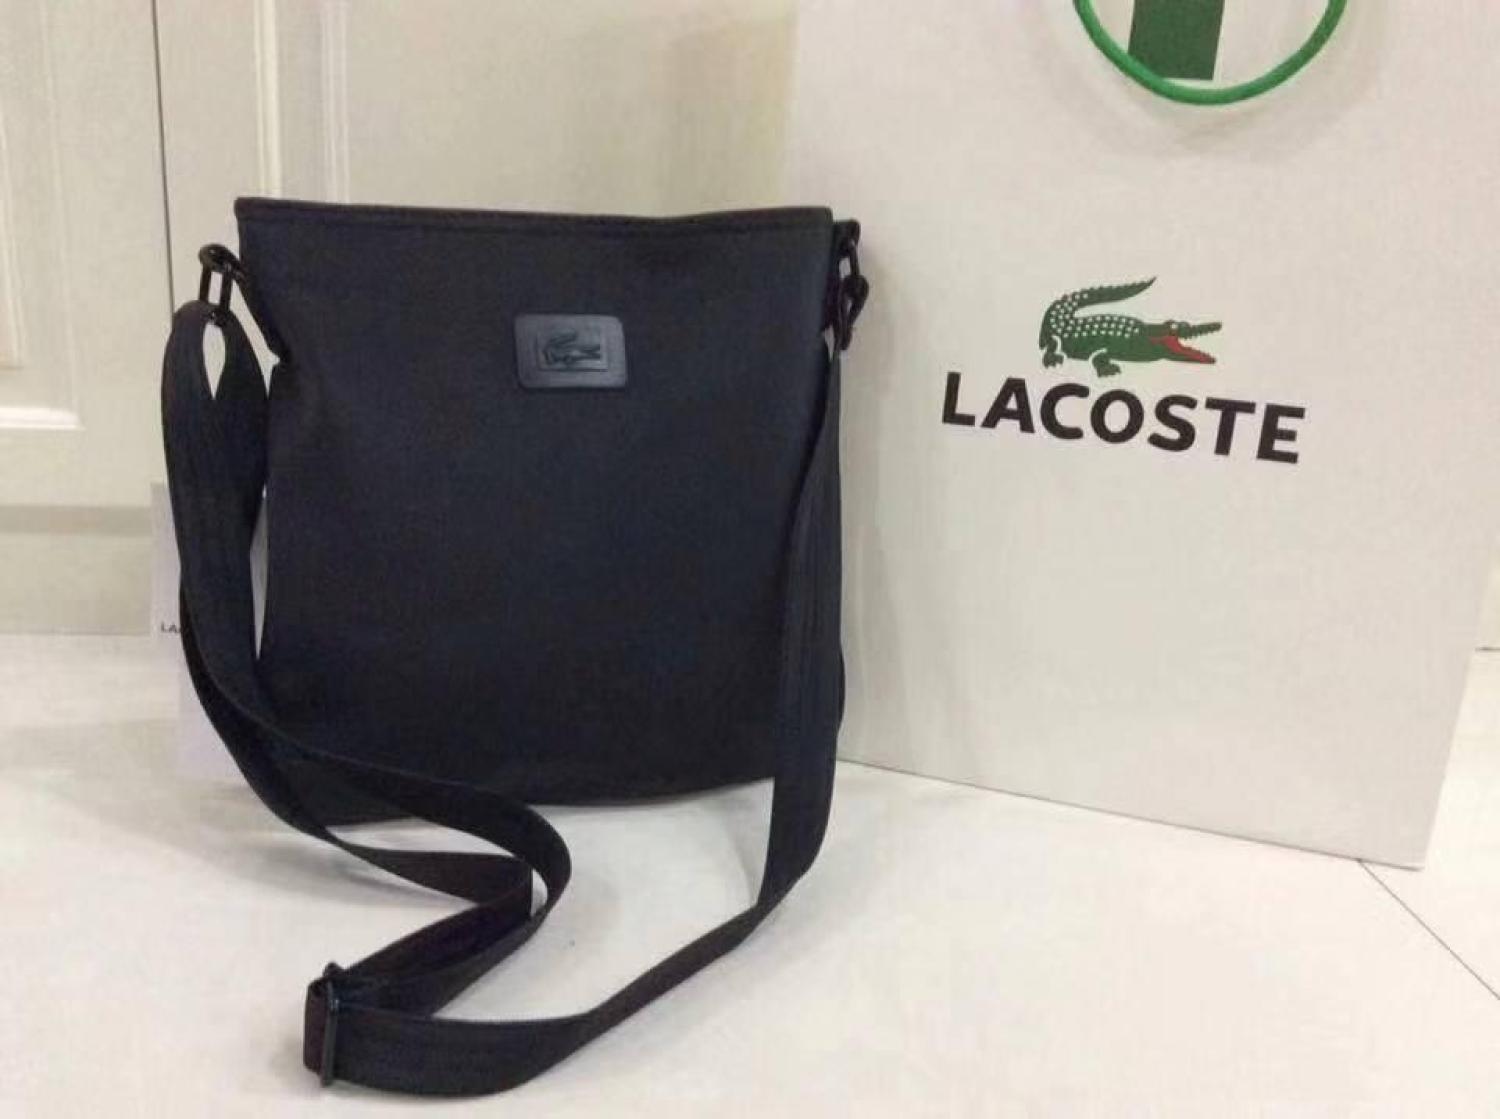 lacoste bag original price